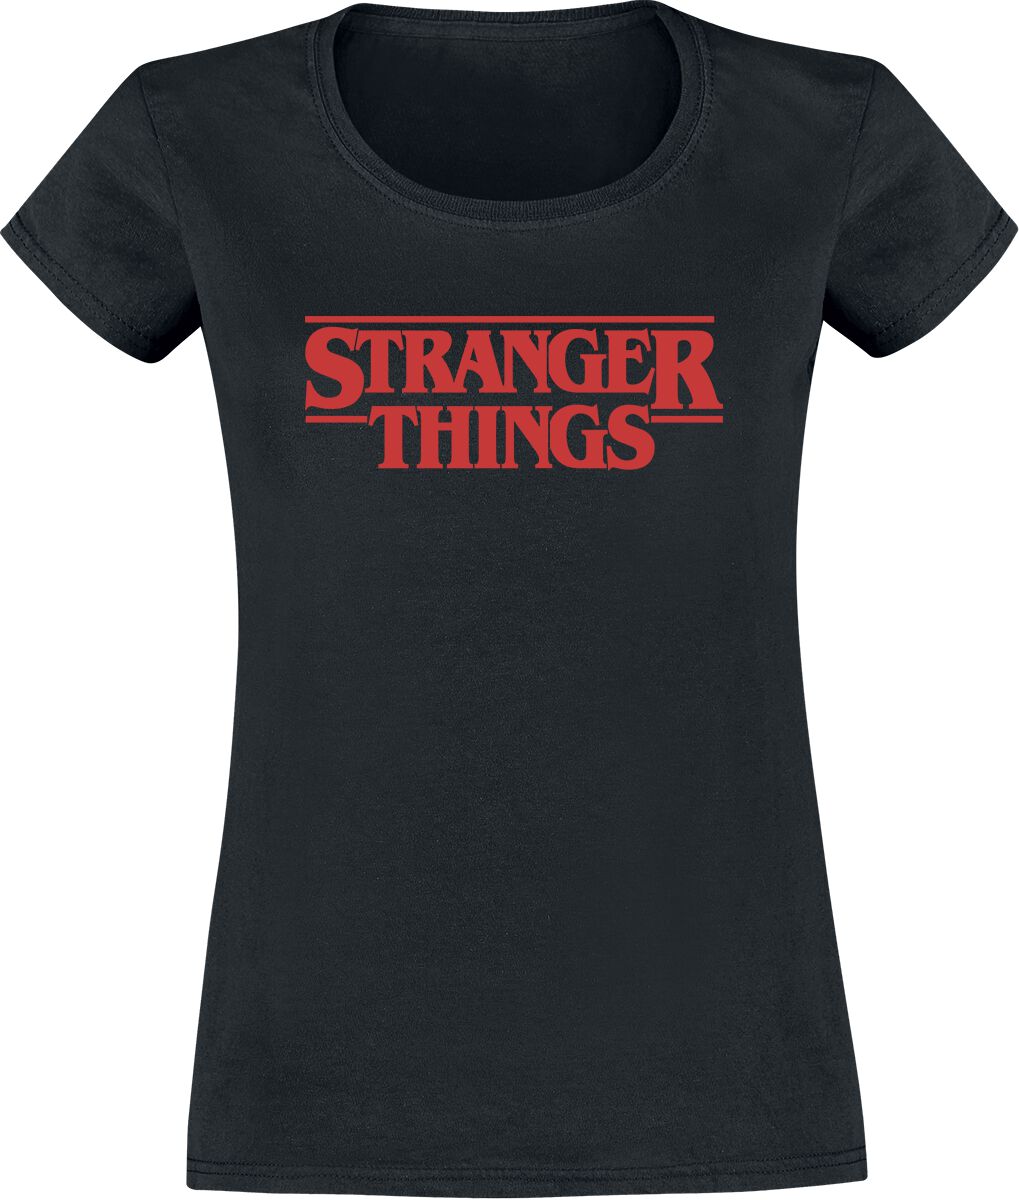 Stranger Things T-Shirt - Classic Logo - S bis XXL - für Damen - Größe M - schwarz  - EMP exklusives Merchandise!